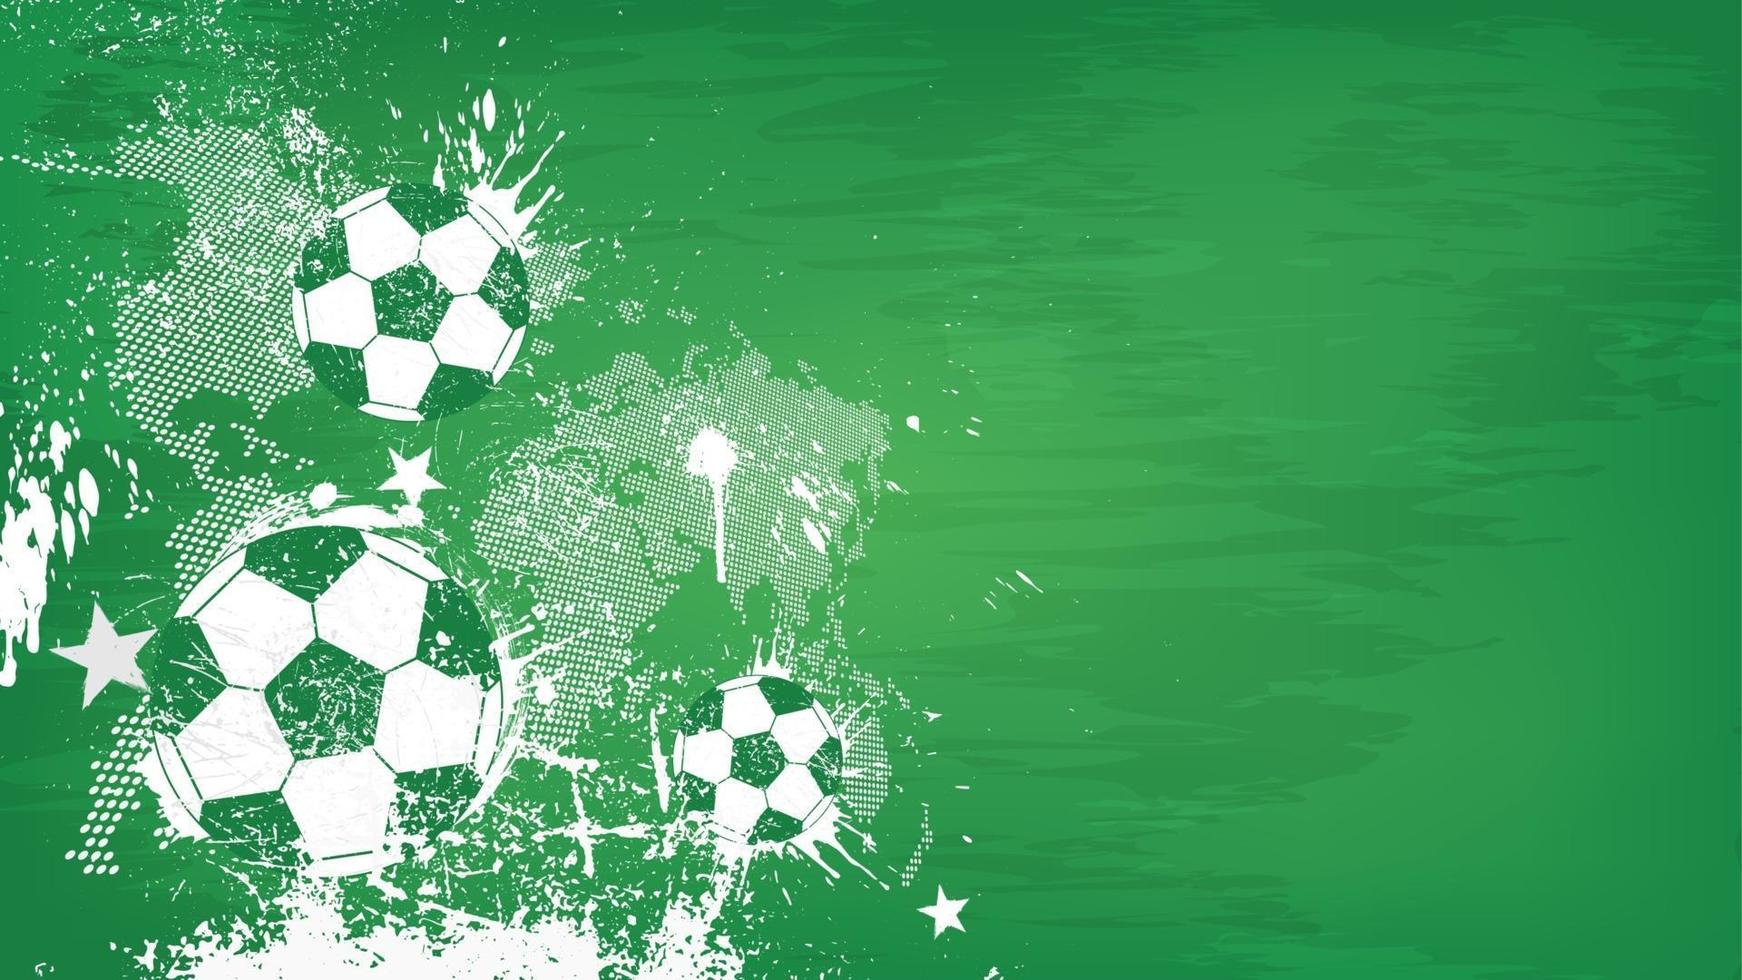 grunge abstracte voetbal achtergrond met wereldkaart en stofdeeltje op blackboard textuur. plat ontwerp . vector voor internationale wereldkampioenschap toernooi cup 2018.